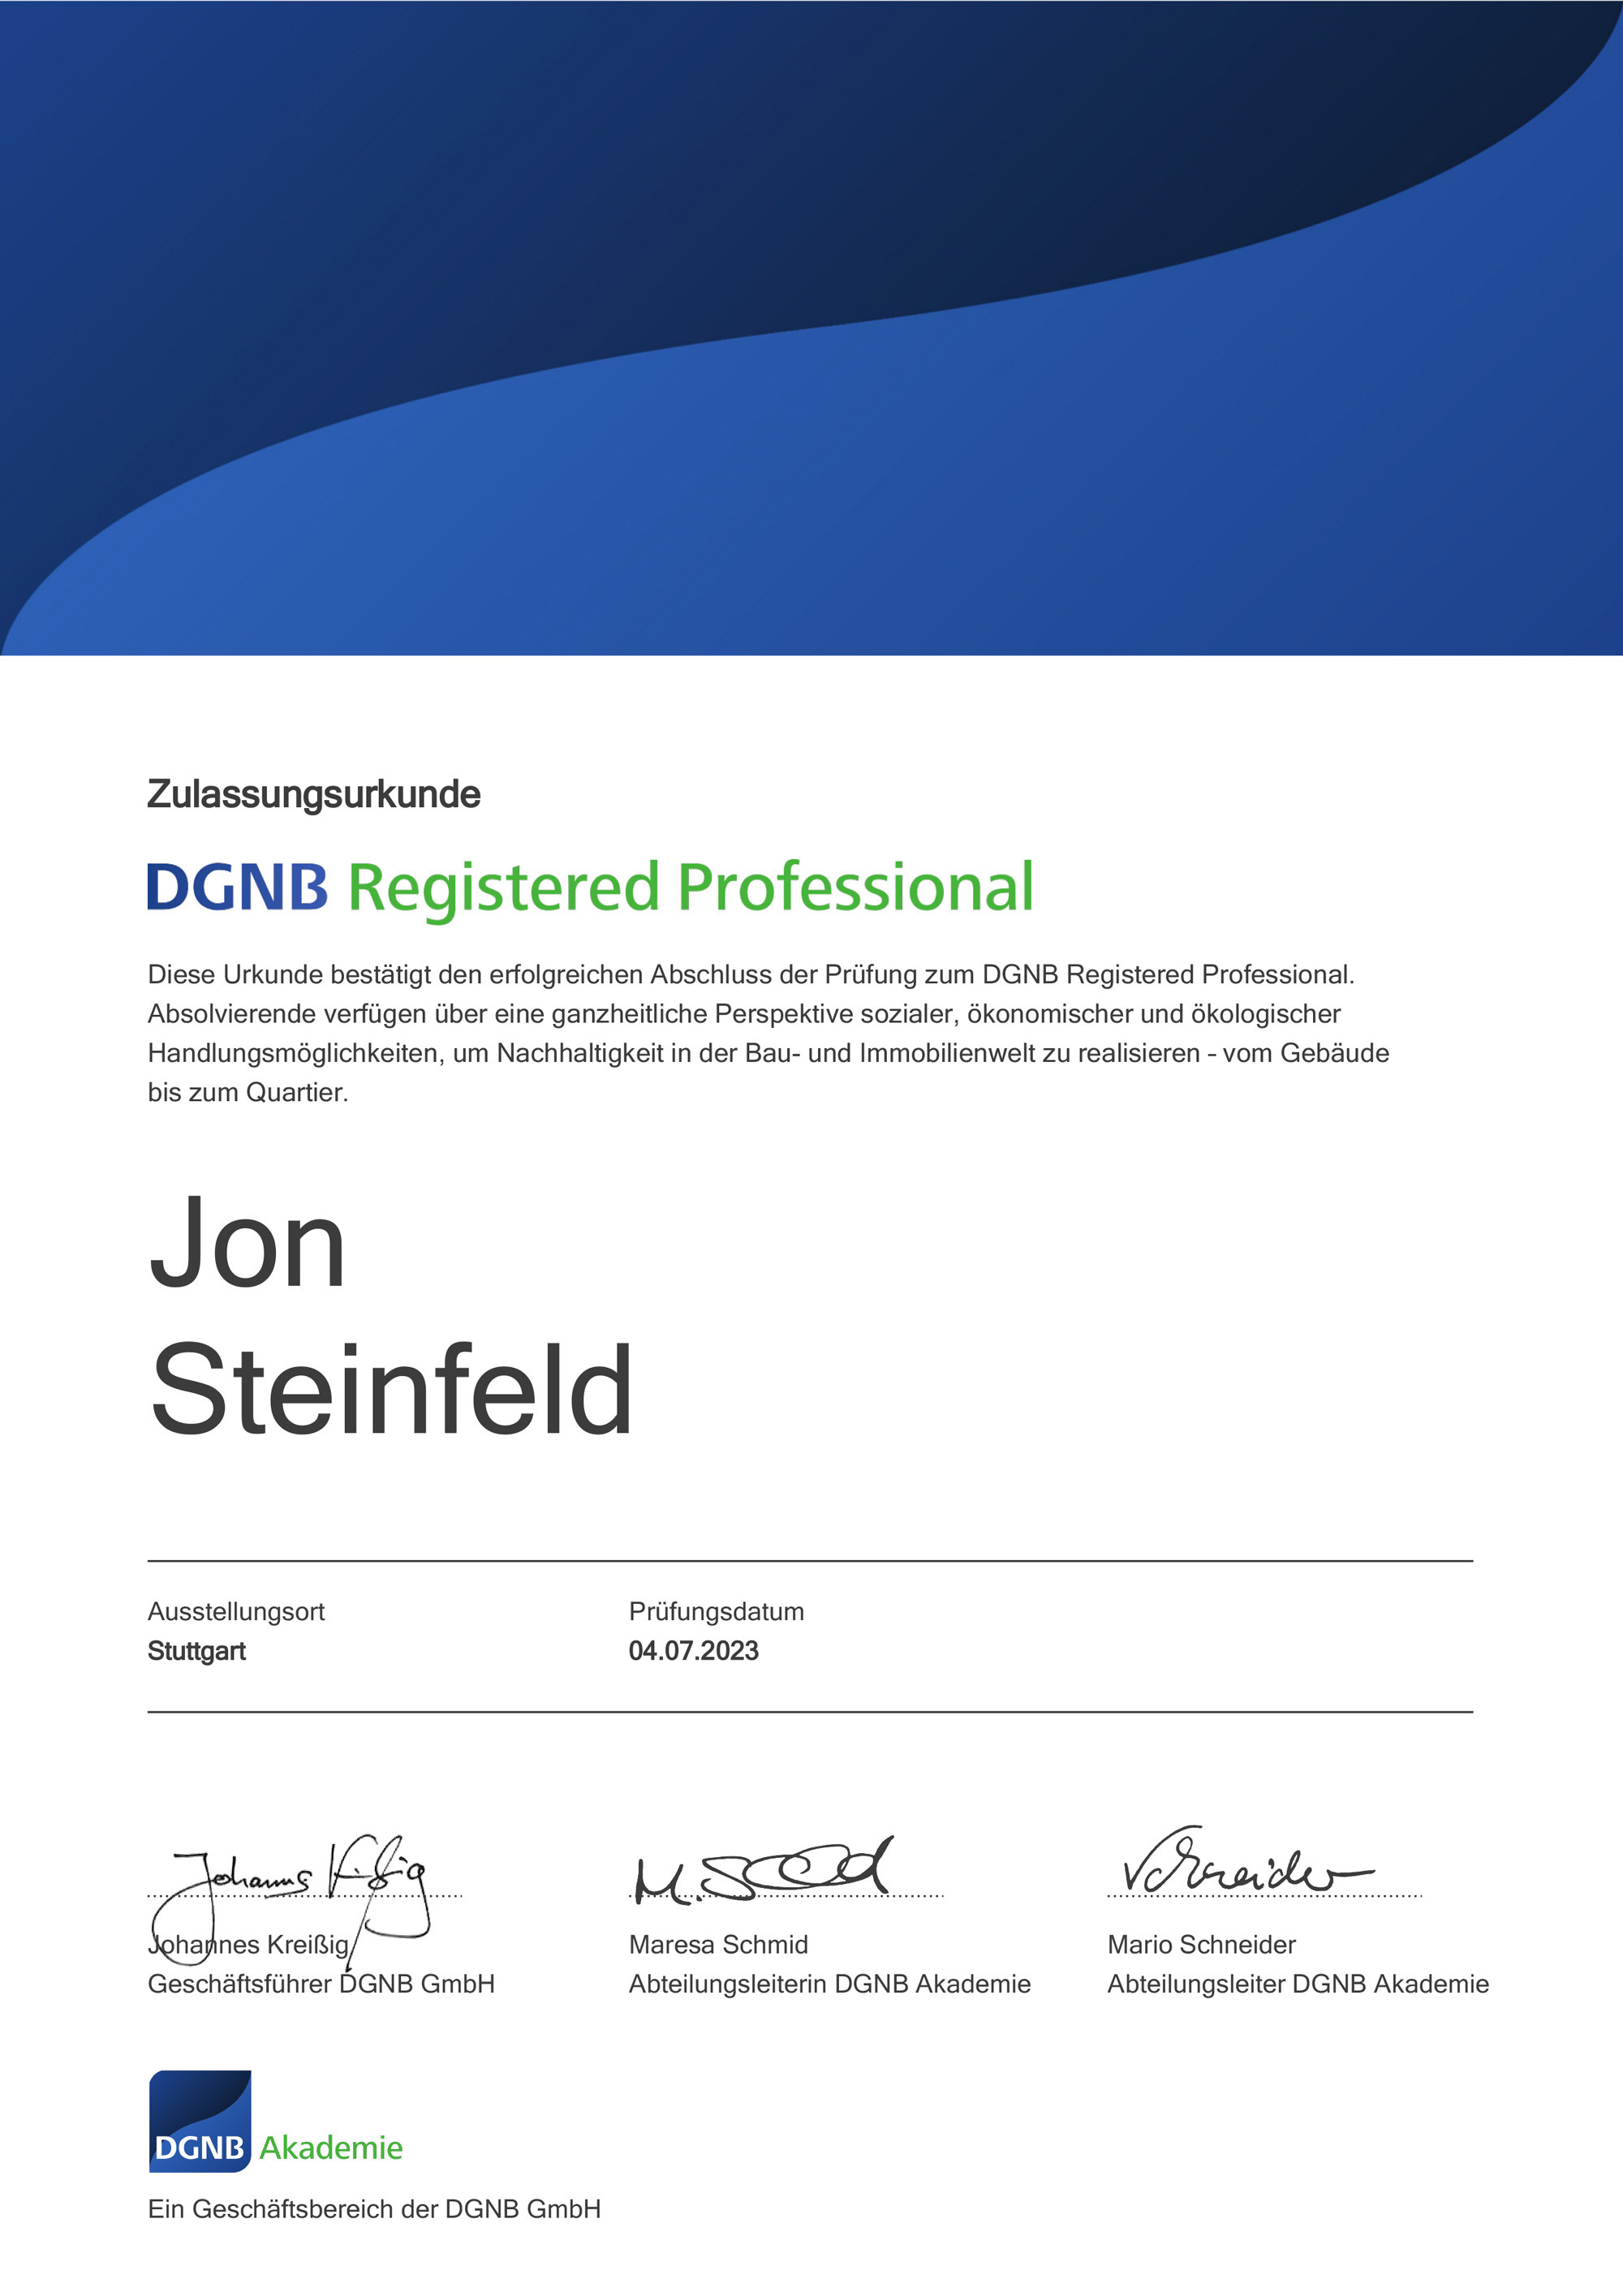 dgnb_registered_professional_steinfeld_jon_28092_2000.jpg